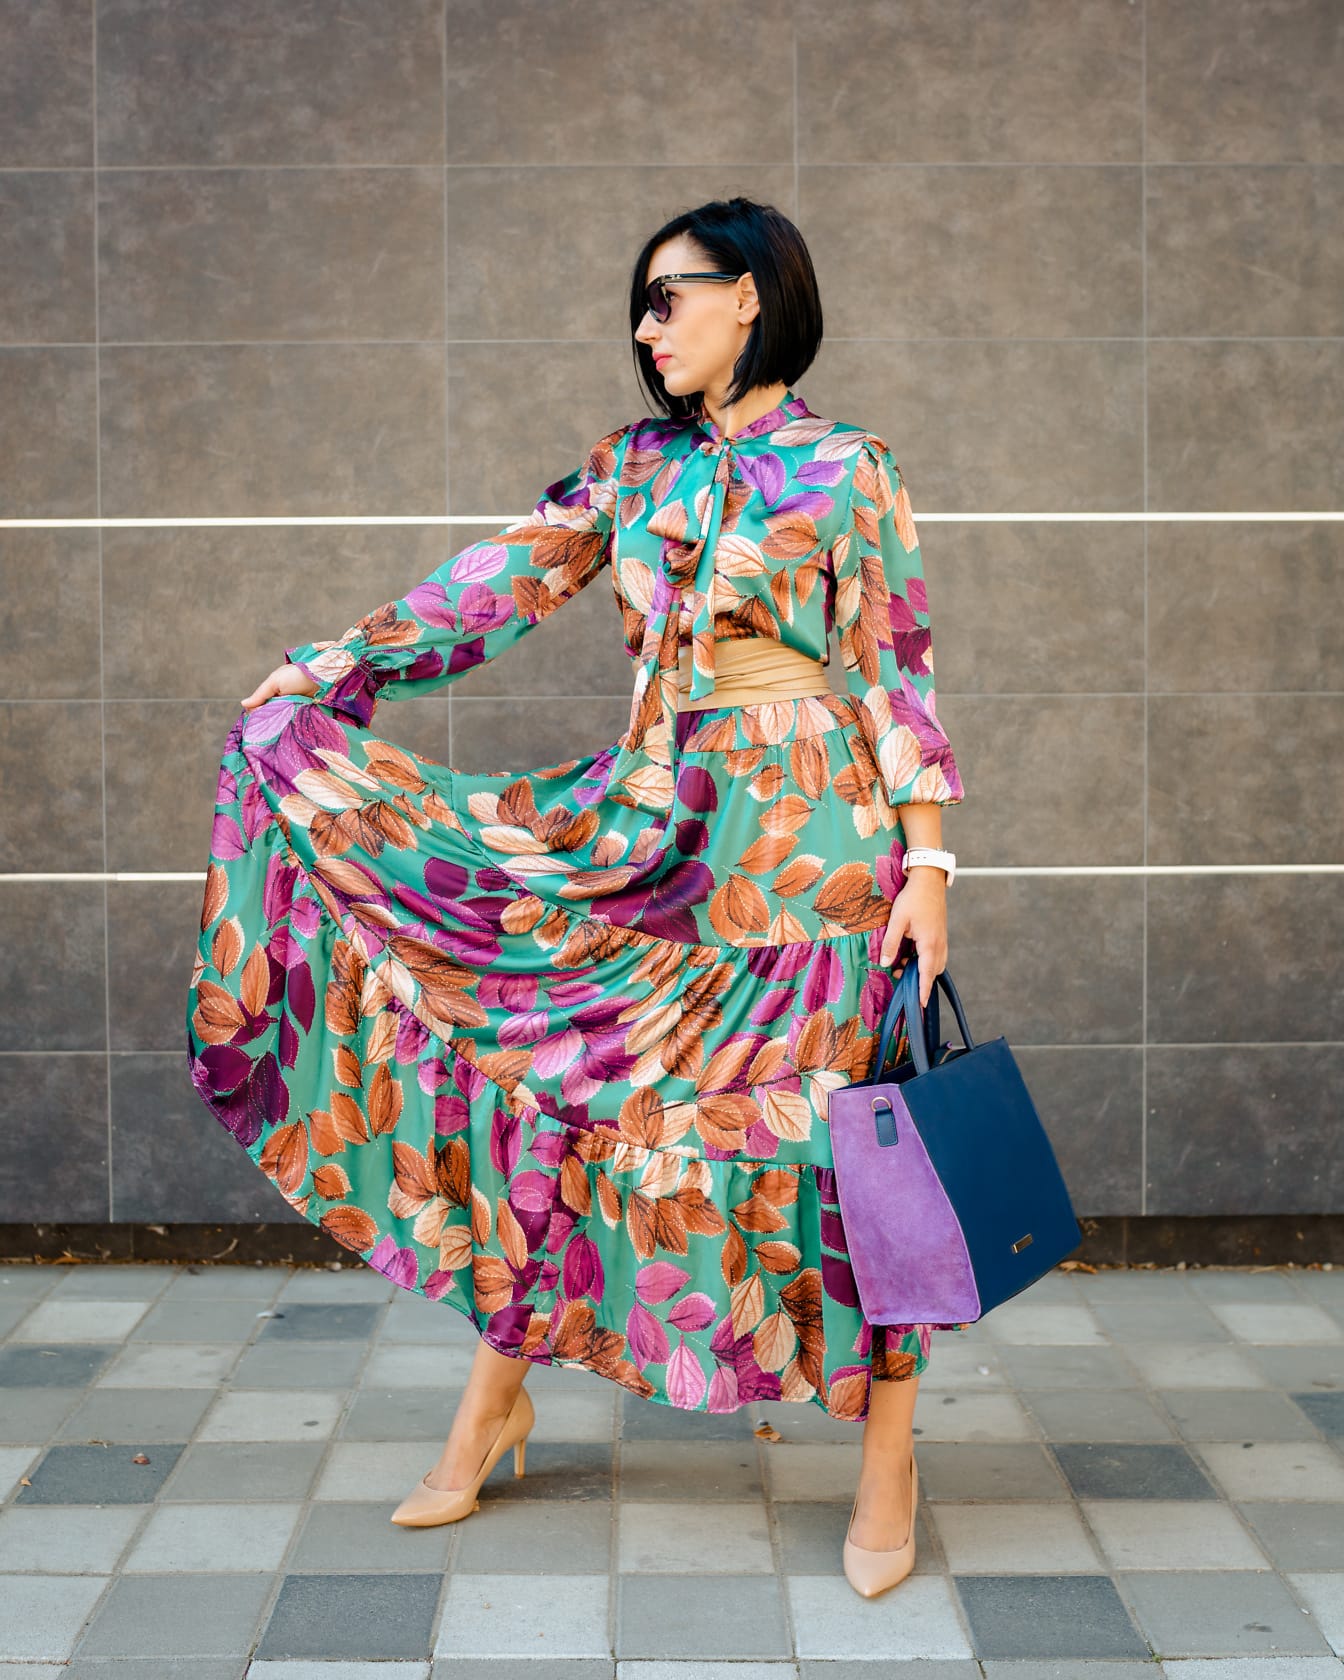 Smal ung dam poserar i en färgrik klänning och lila fashionabla handväska